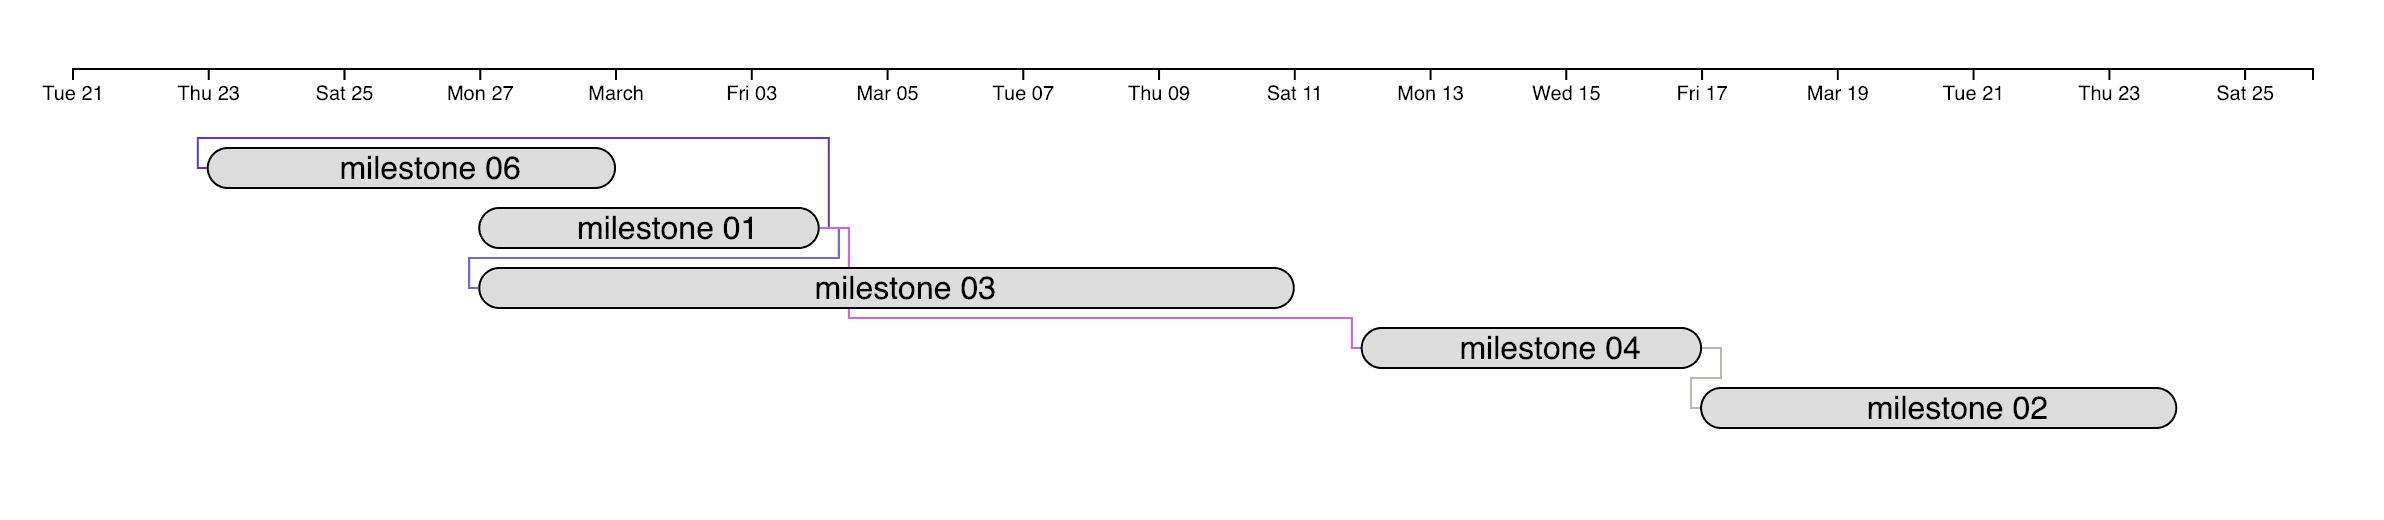 D3 Js Gantt Chart Example